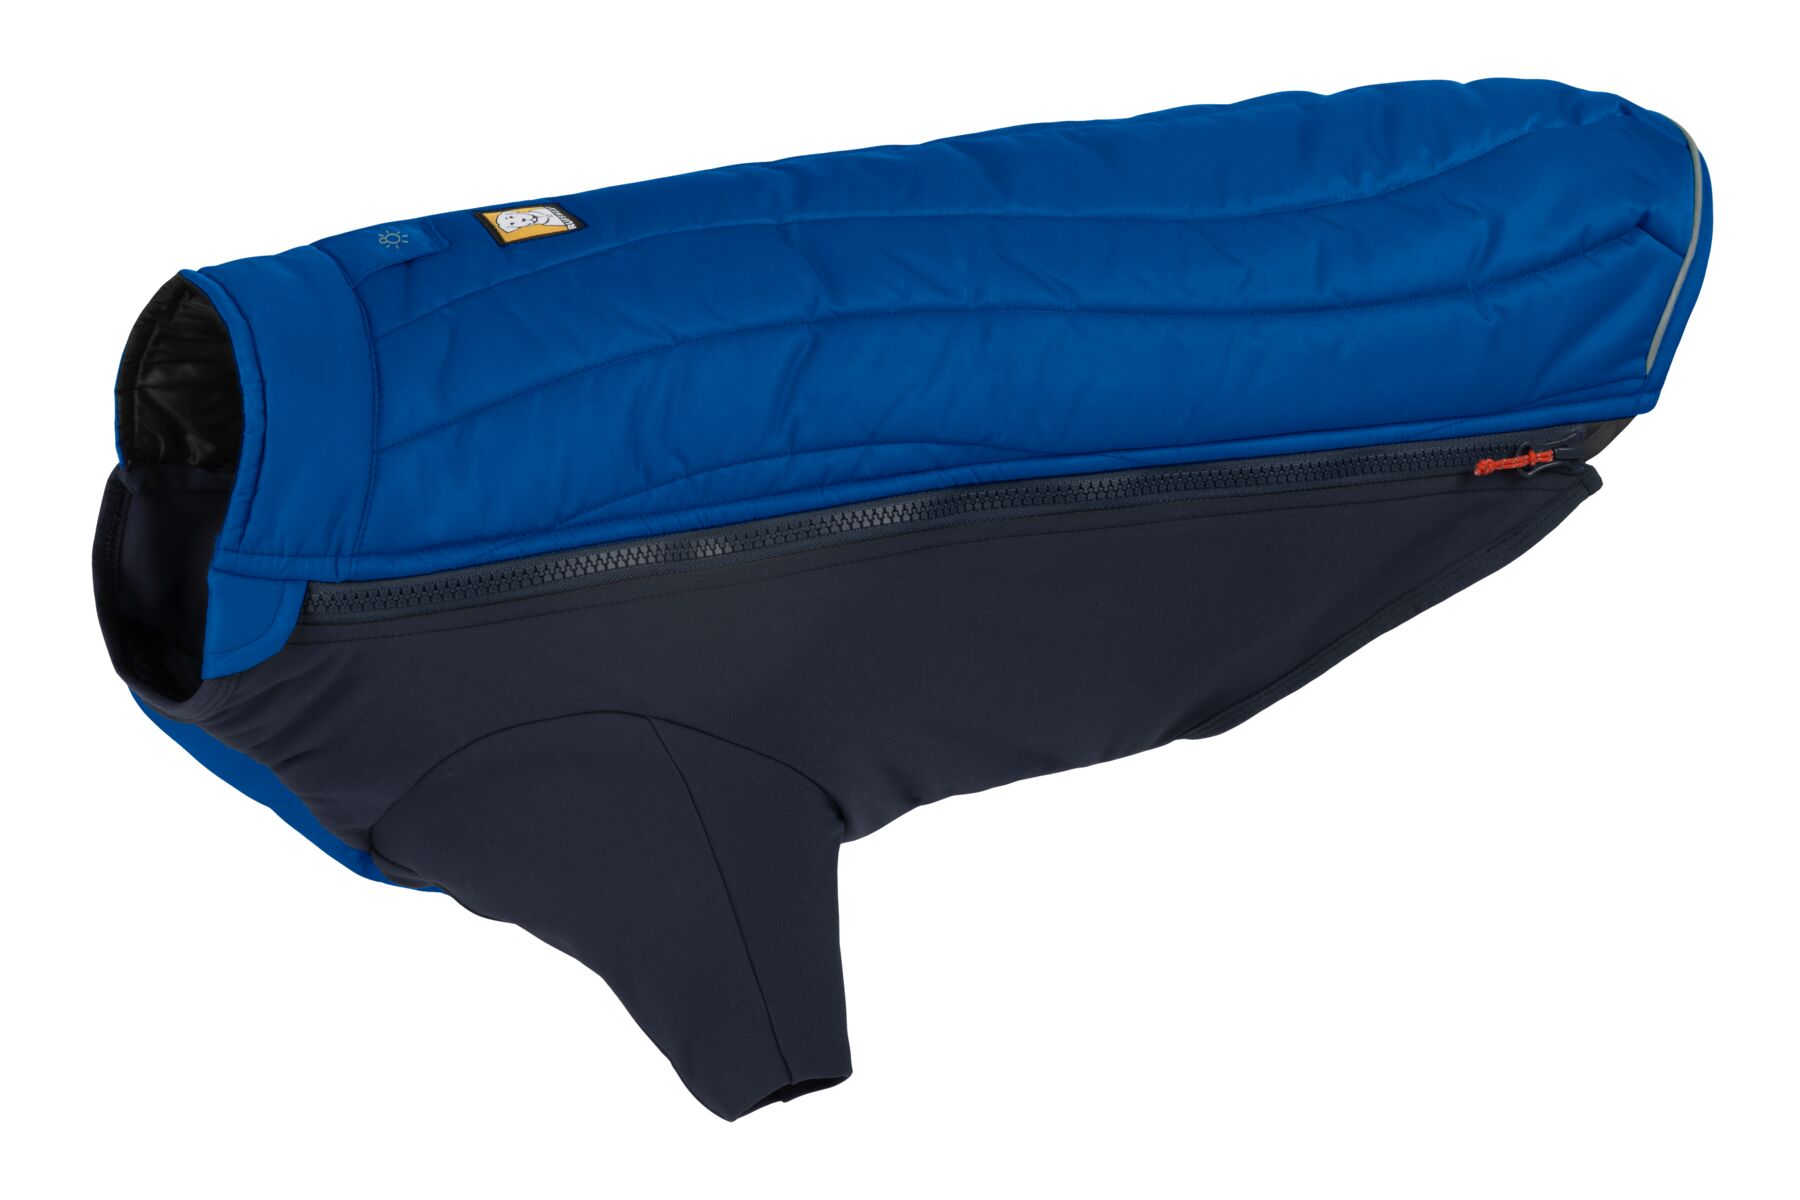 Veste d'hiver powder hound™ avec isolation hybride pour froid extreme. Couleur: blue pool (bleu), taille: l